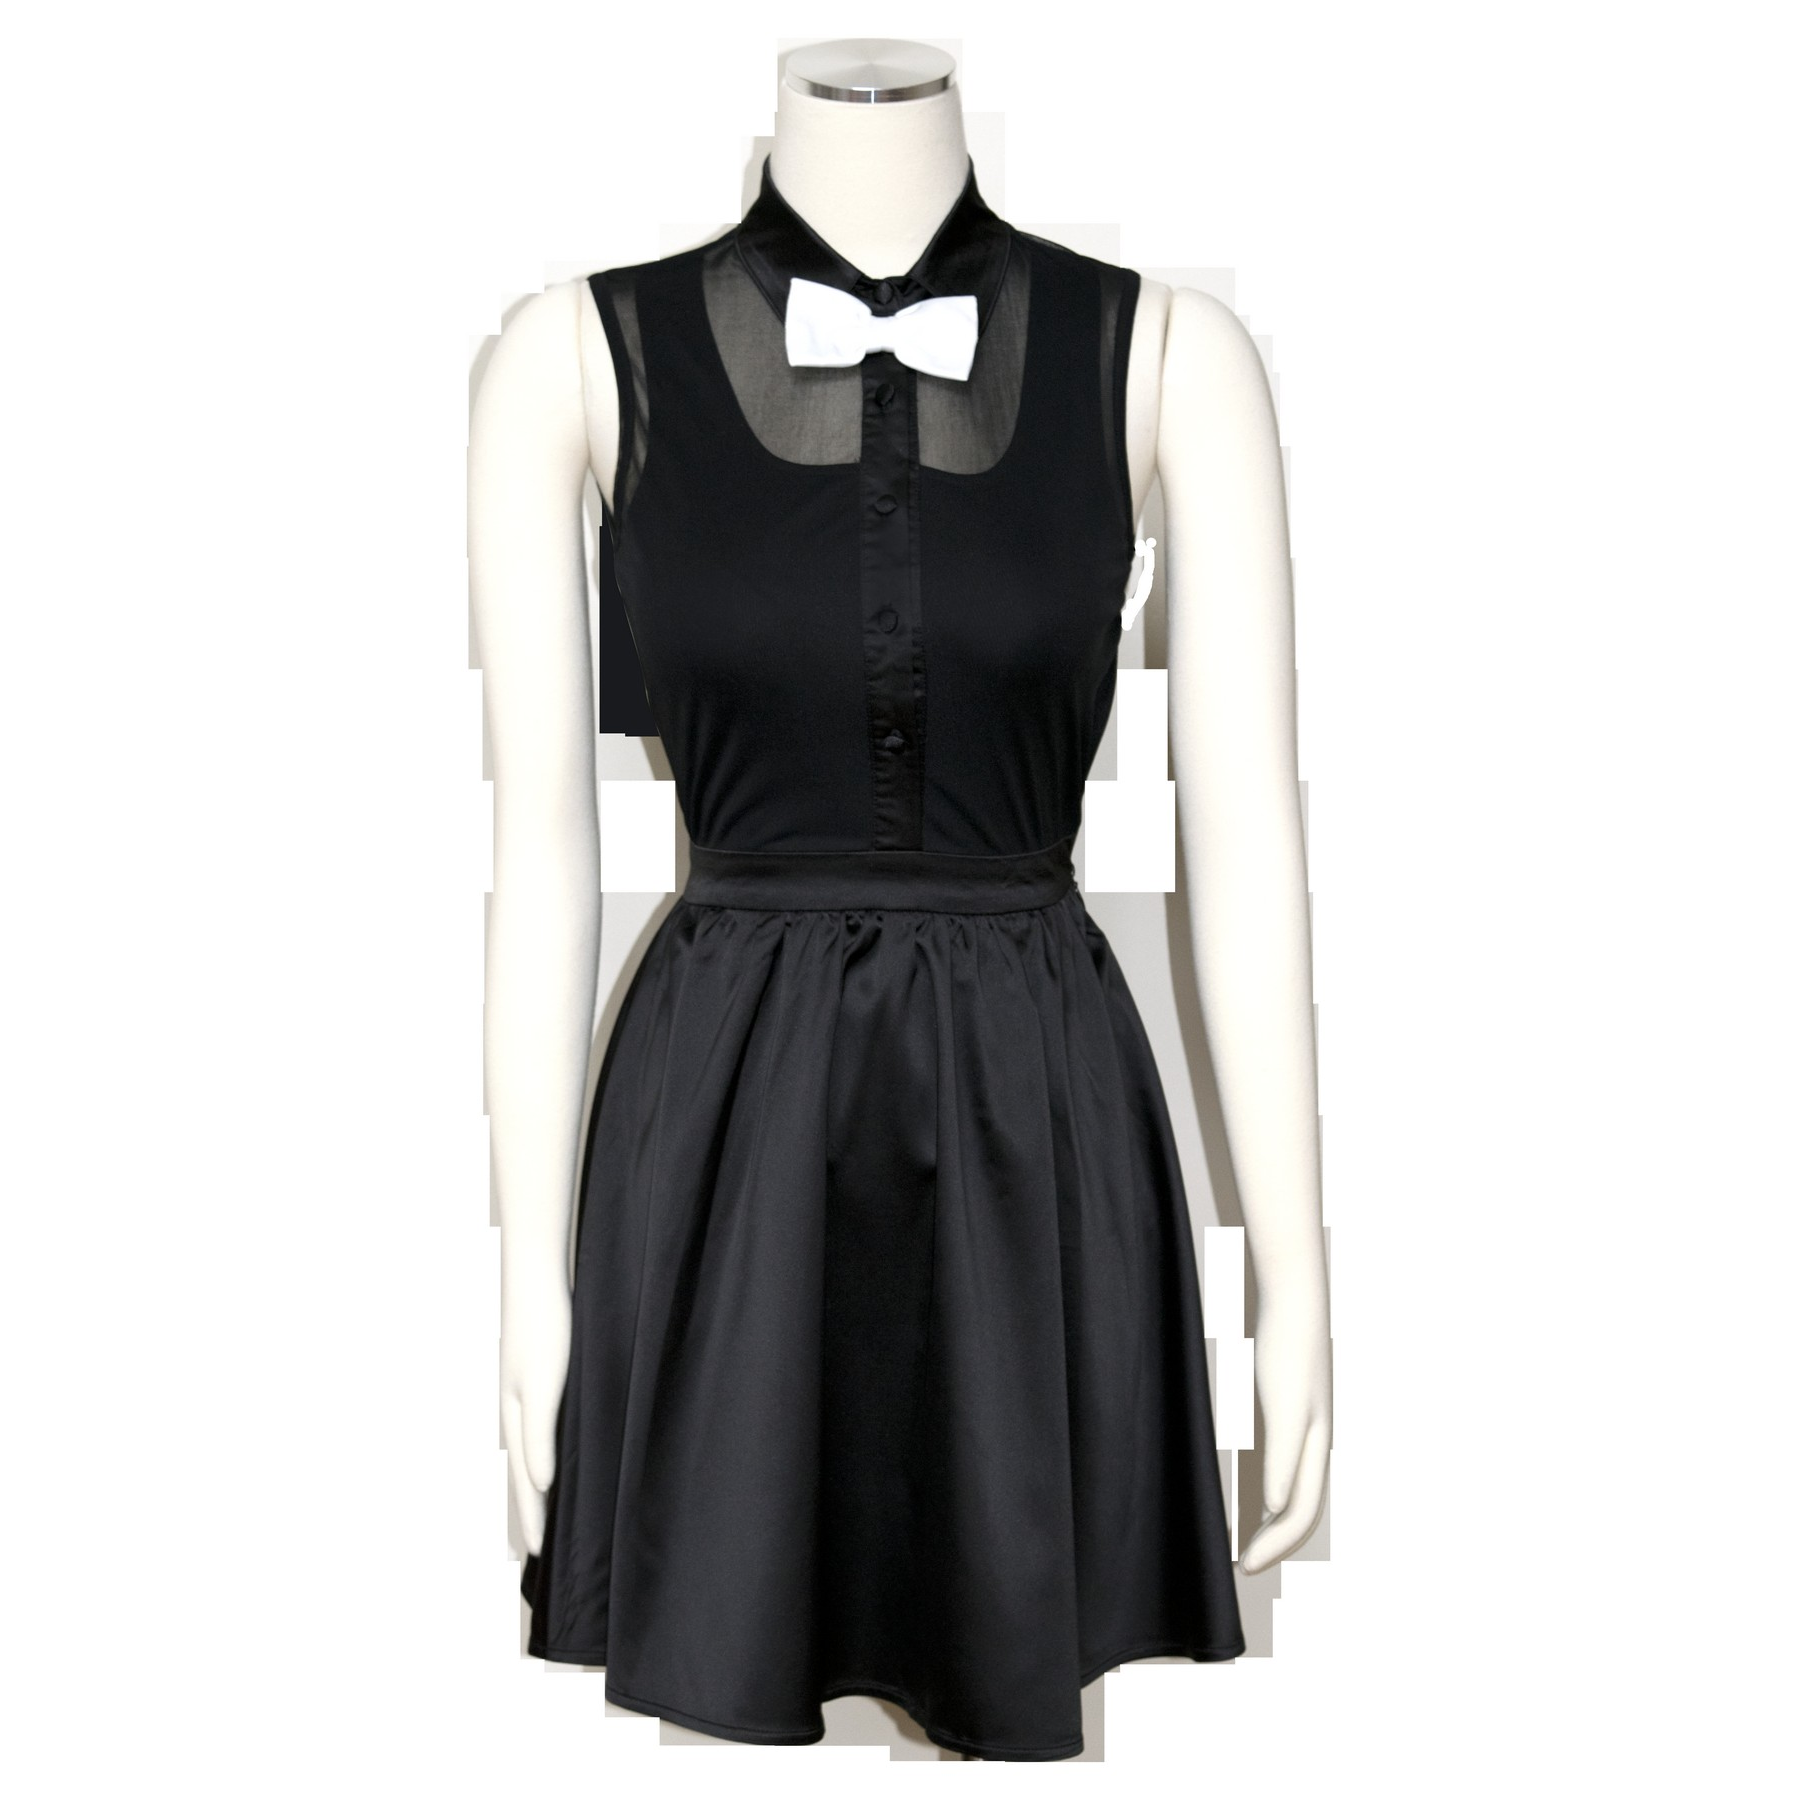 Custom Dress - Black with Bow Tie